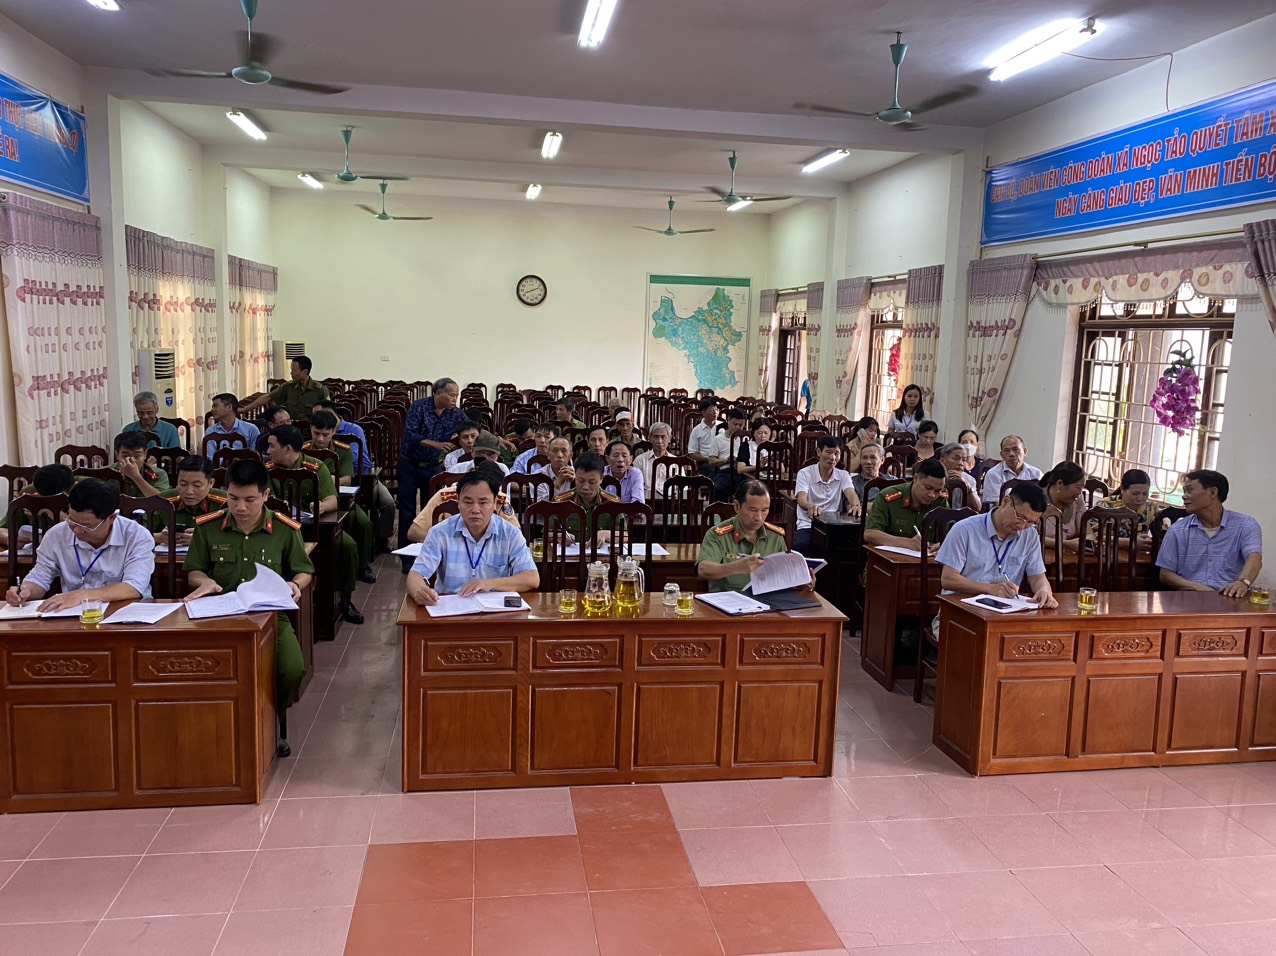 CA huyện Phúc Thọ đã tổ chức hội nghị đánh giá tình hình an ninh trật tự (ANTT) và lấy ý kiến đóng góp của nhân dân đối với Cảnh sát khu vực (CSKV) tại xã Ngọc Tảo.